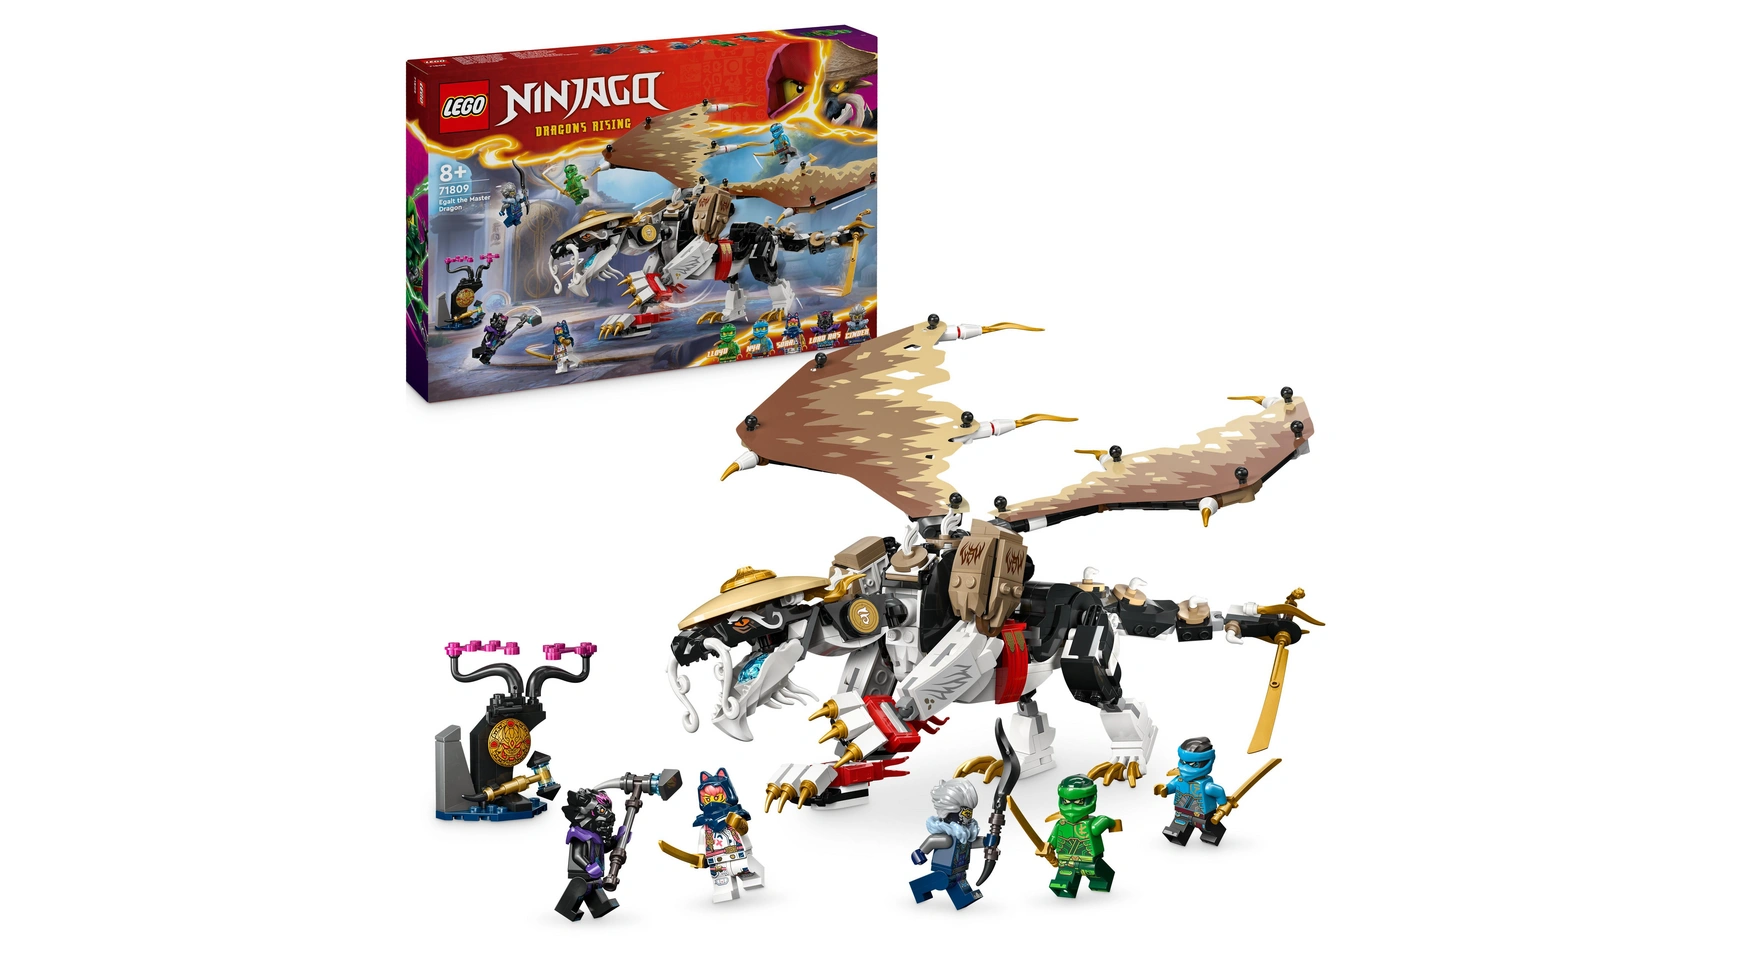 Lego NINJAGO Эгалт повелитель драконов, набор ниндзя с игрушками-драконами